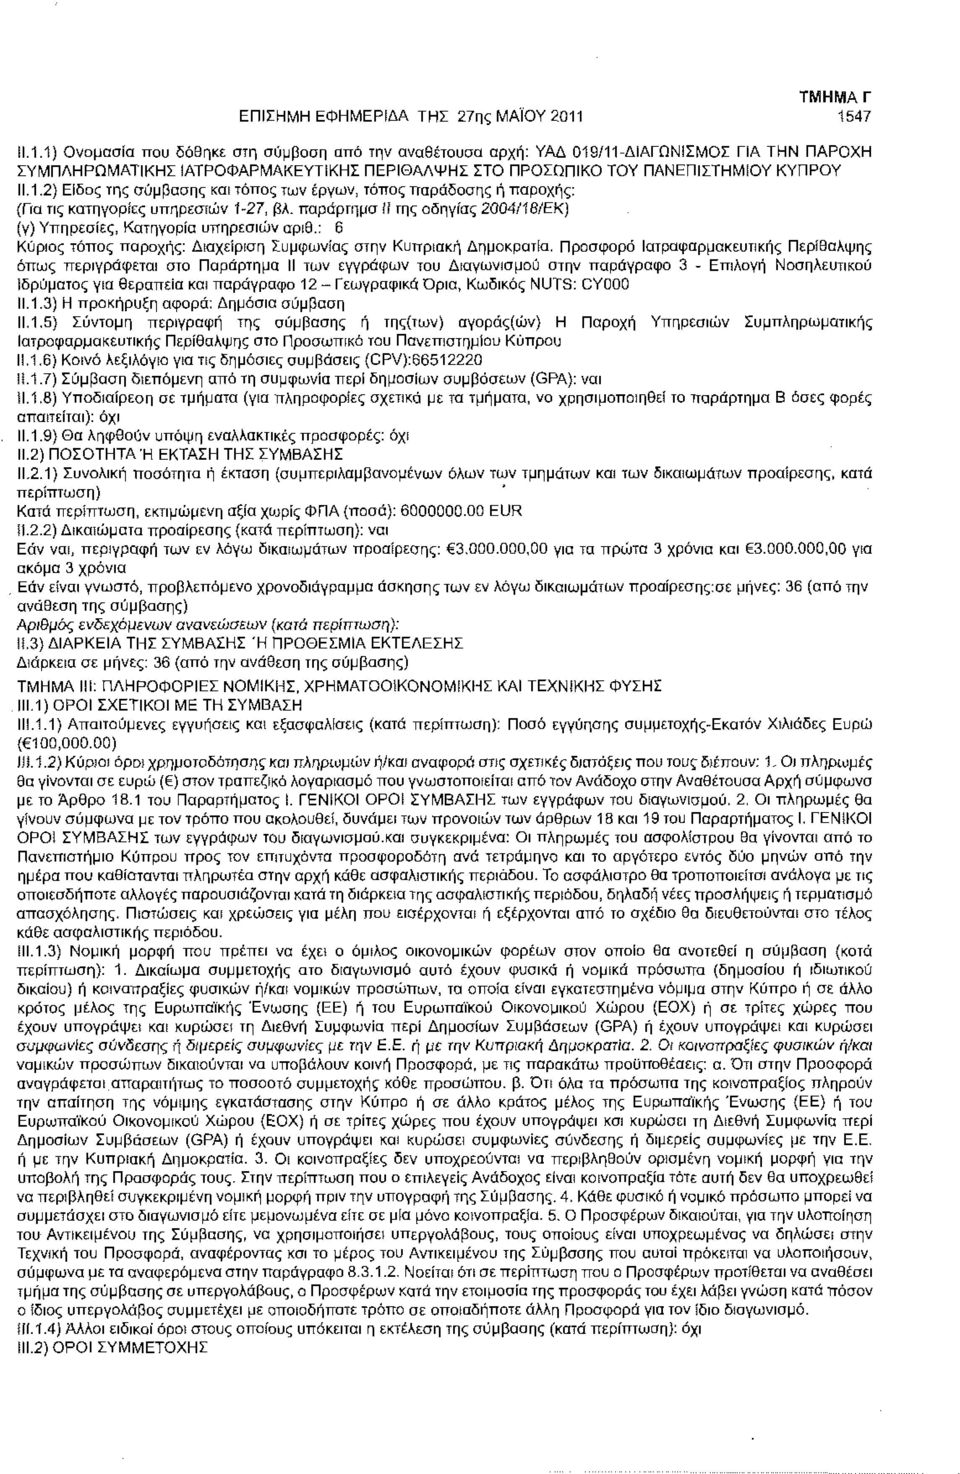 παράρτημα Π της οδηγίας 2004/18/ΕΚ) (γ) Υπηρεσίες, Κατηγορία υπηρεσιών αριθ.: 6 Κύριος τόπος παροχής: Διαχείριση Συμφωνίας στην Κυπριακή Δημοκρατία.